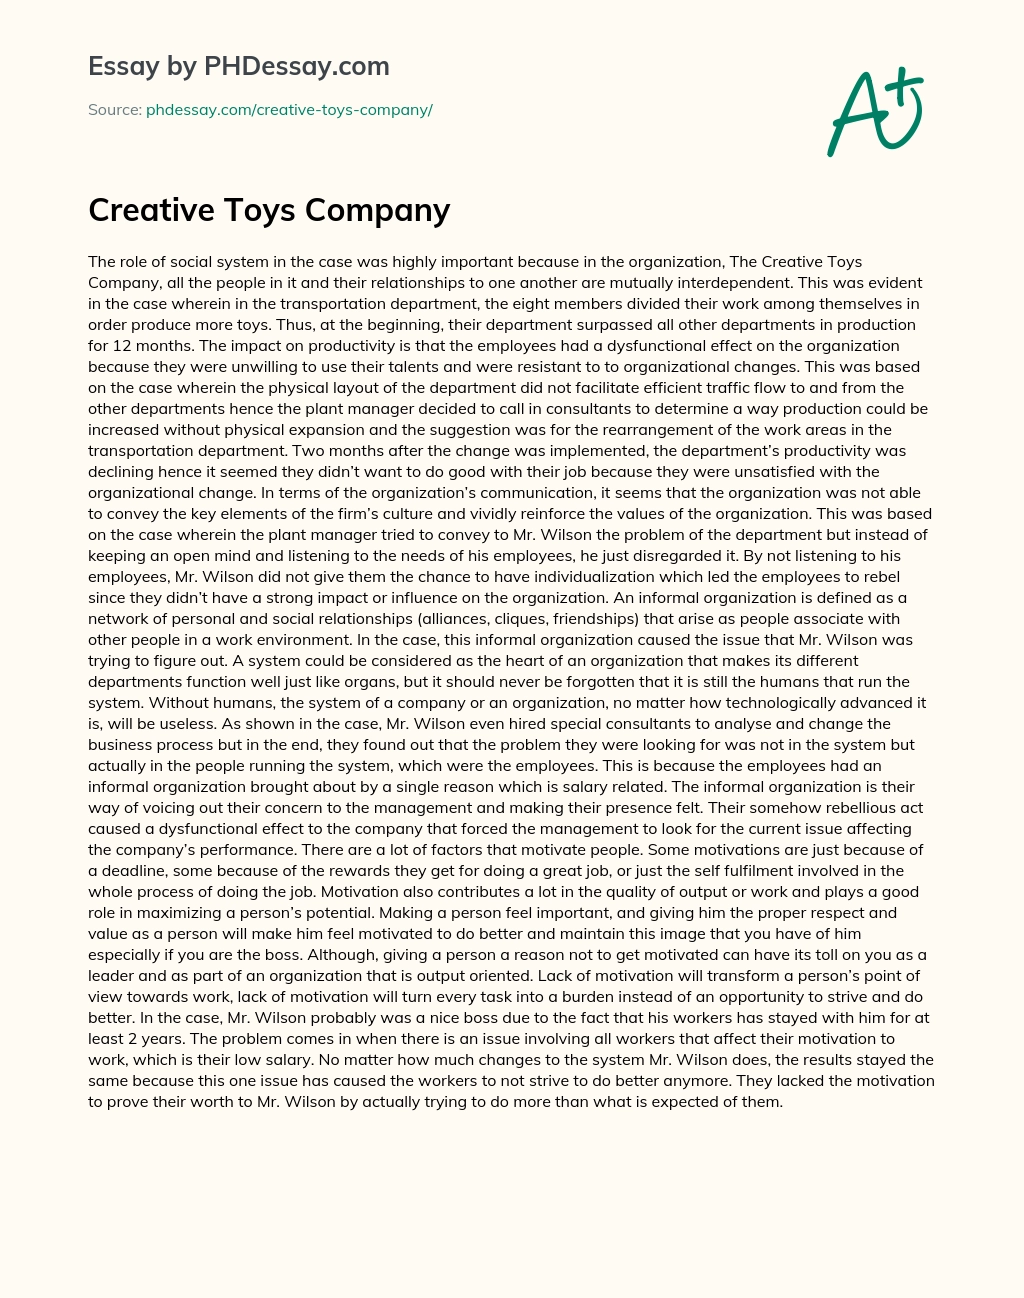 Creative Toys Company essay